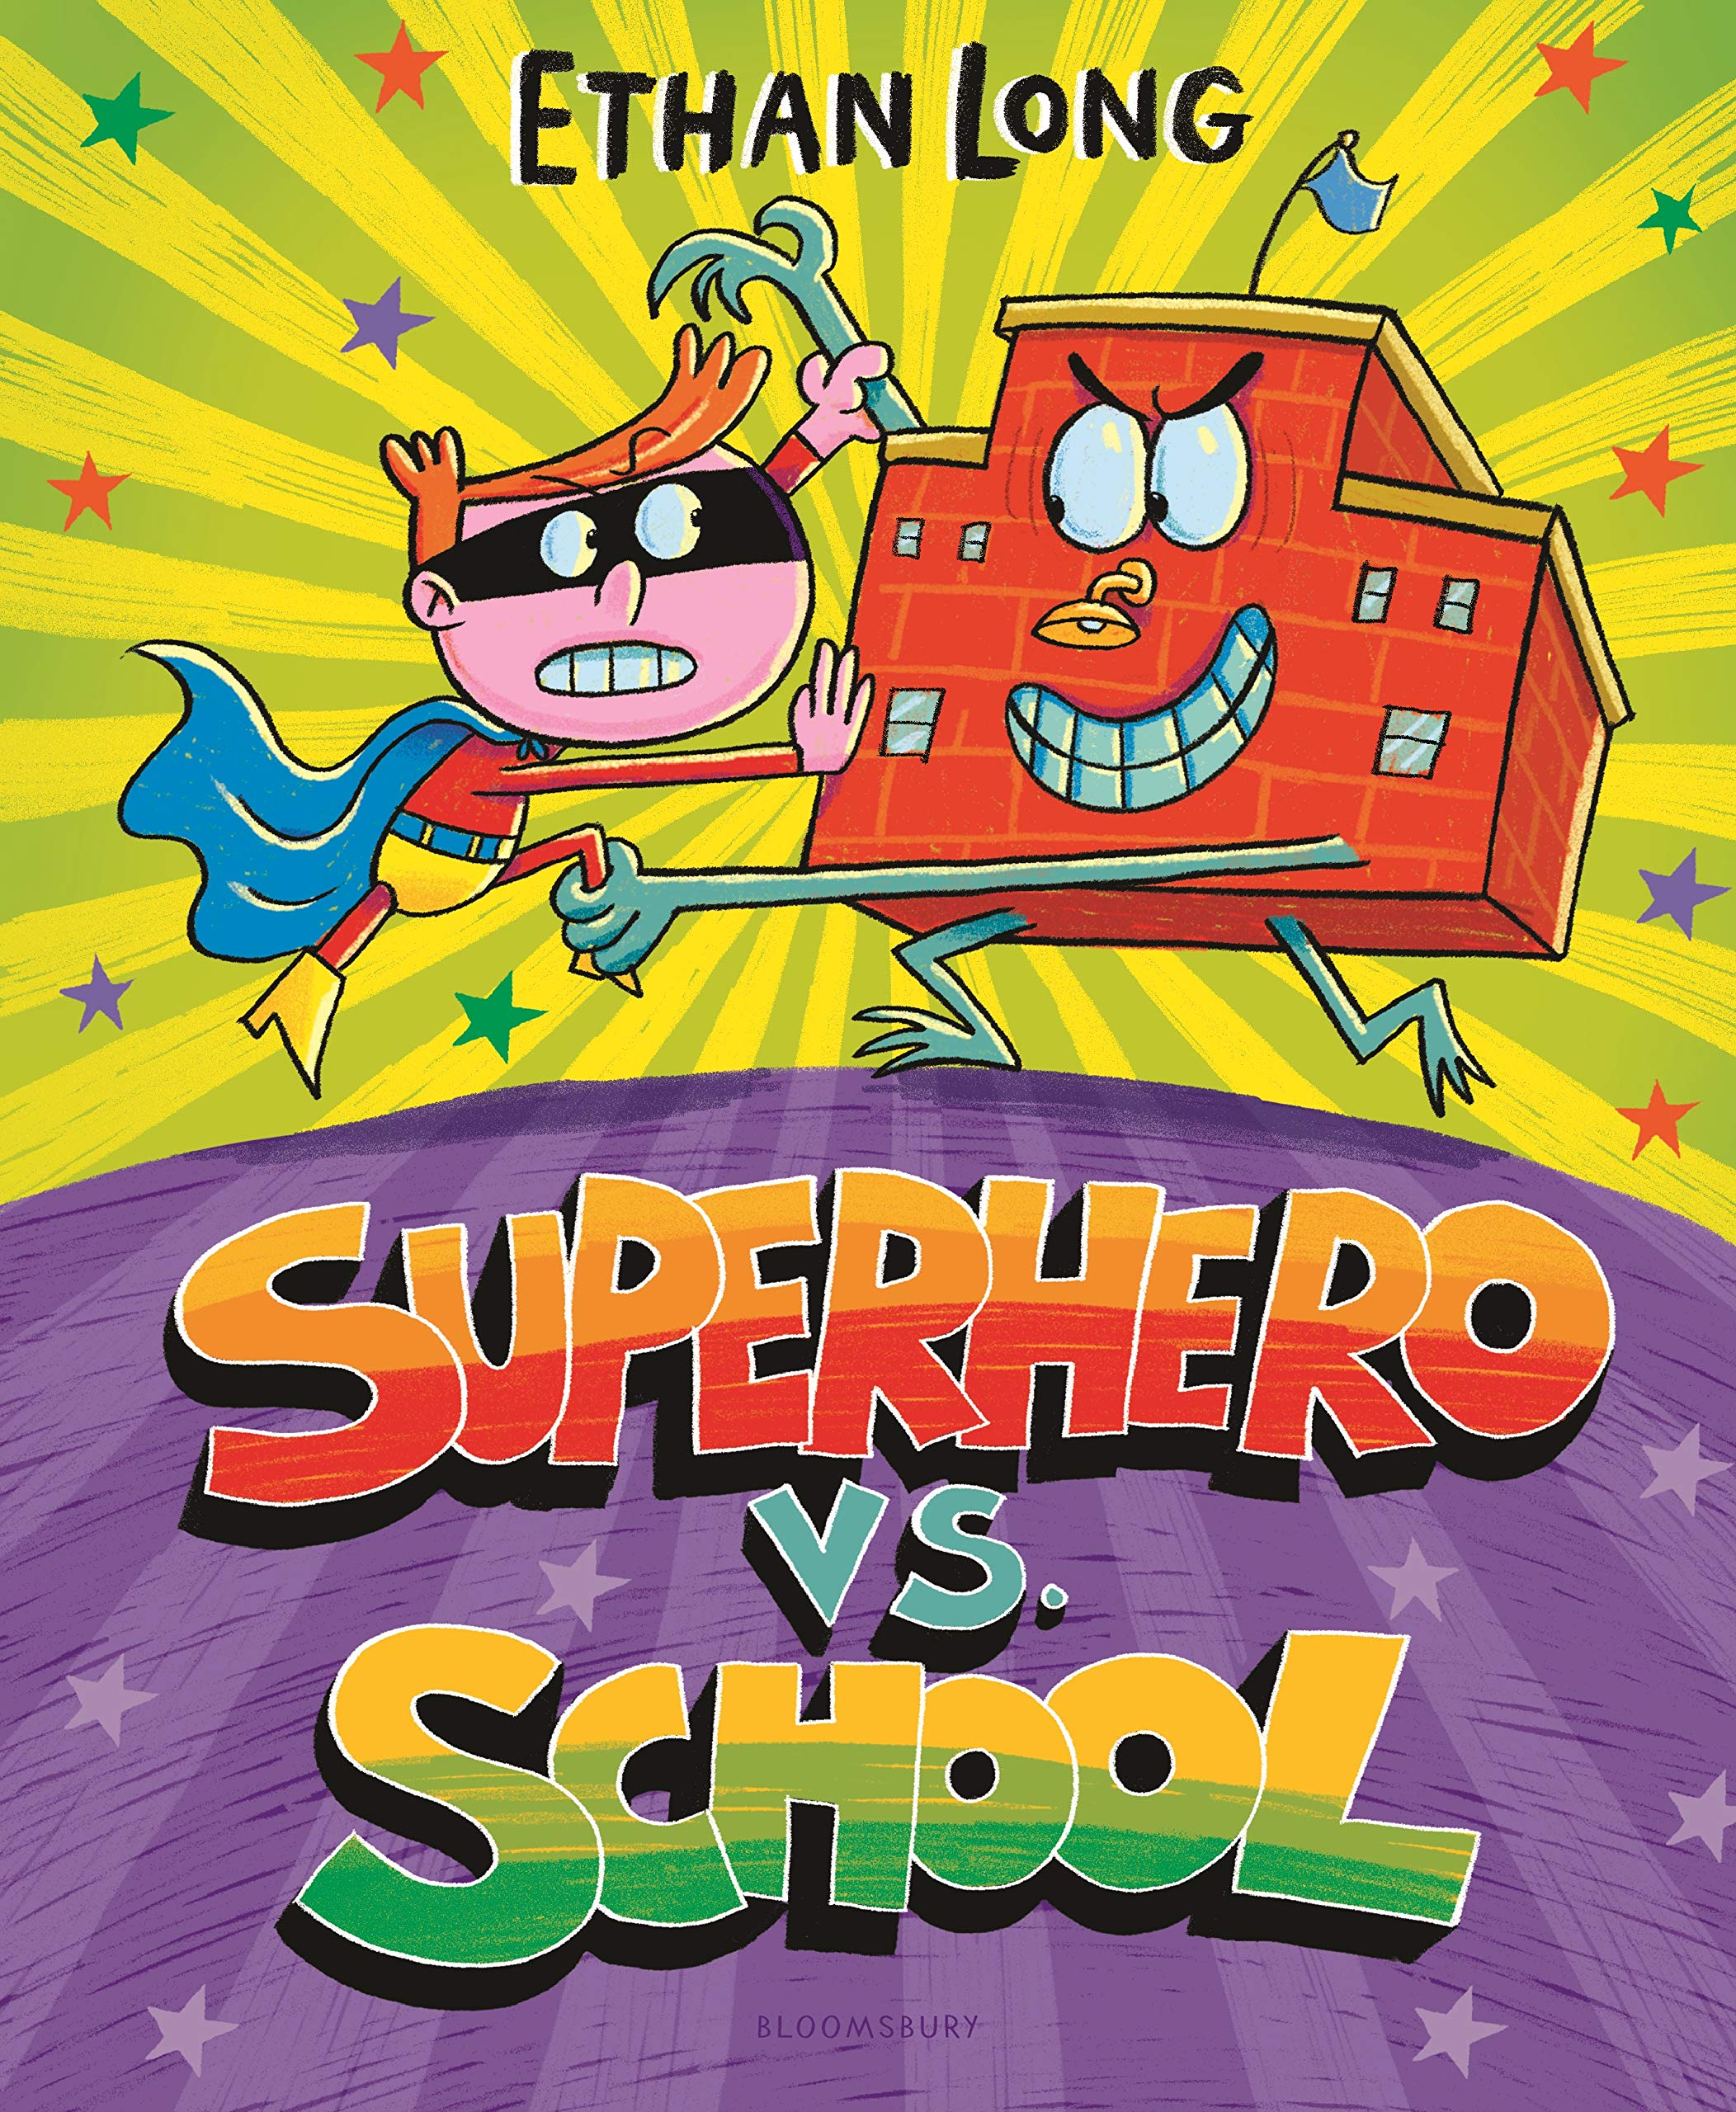 Superhero vs. School